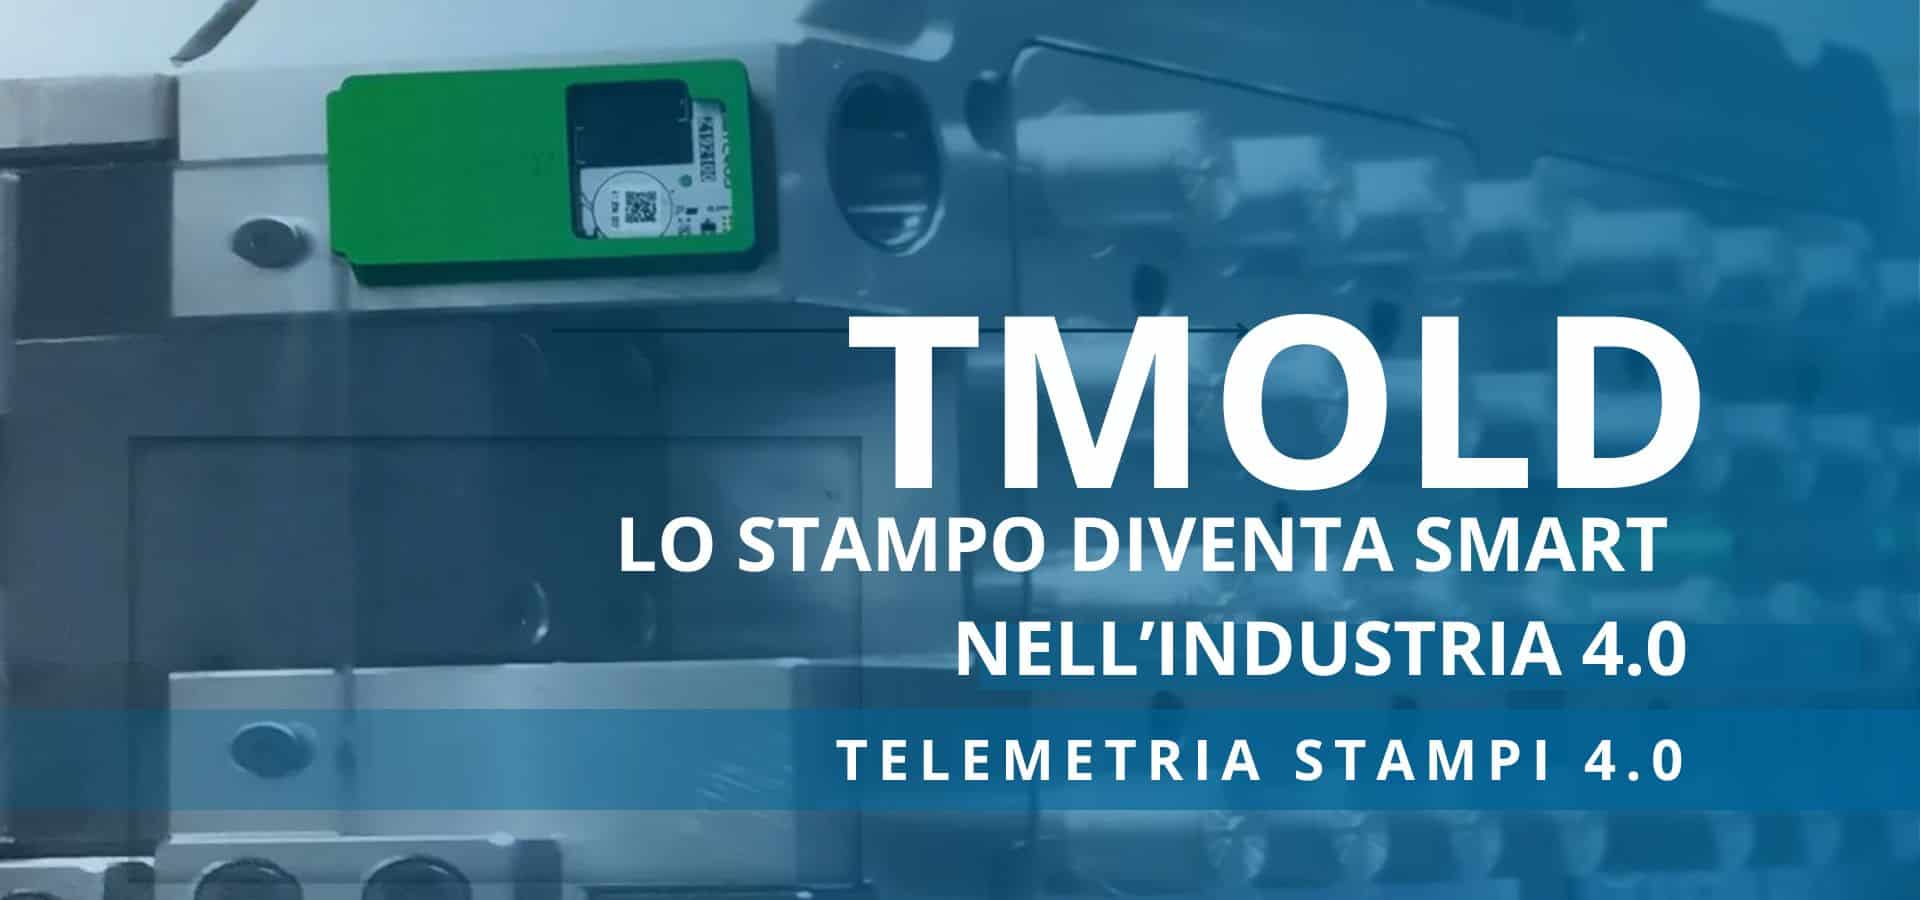 TMOLD: Telemetria Stampi 4.0